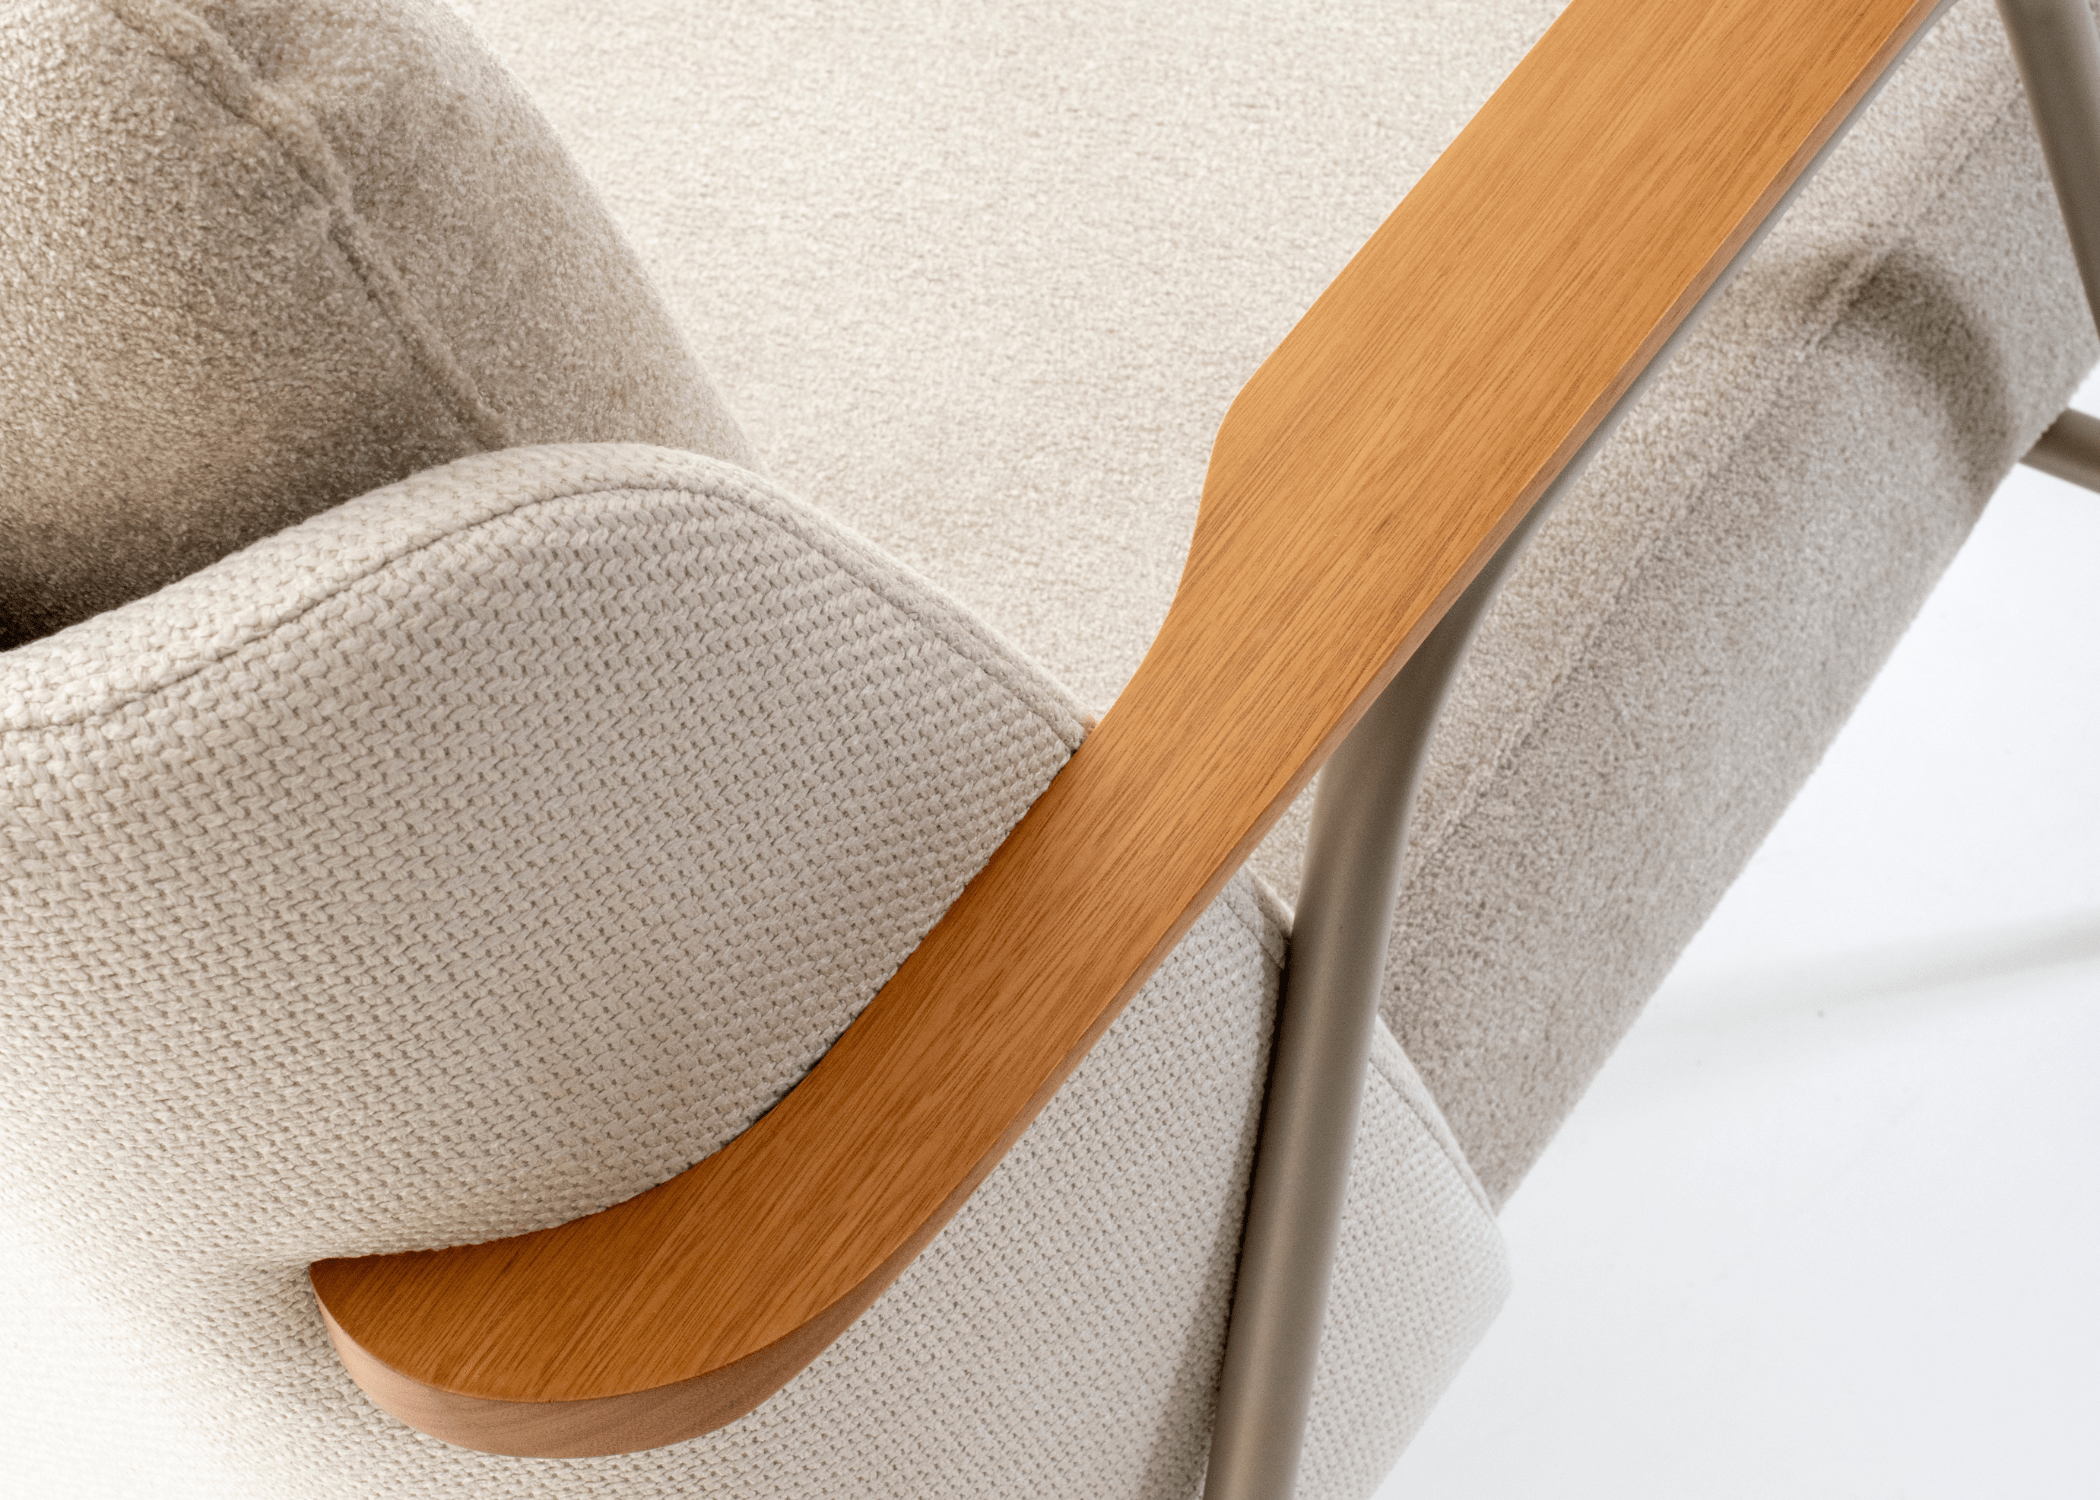 Detalhe dos apoios dos braços em lâmina de madeira na Poltrona Lancer, destacando sua rusticidade refinada.